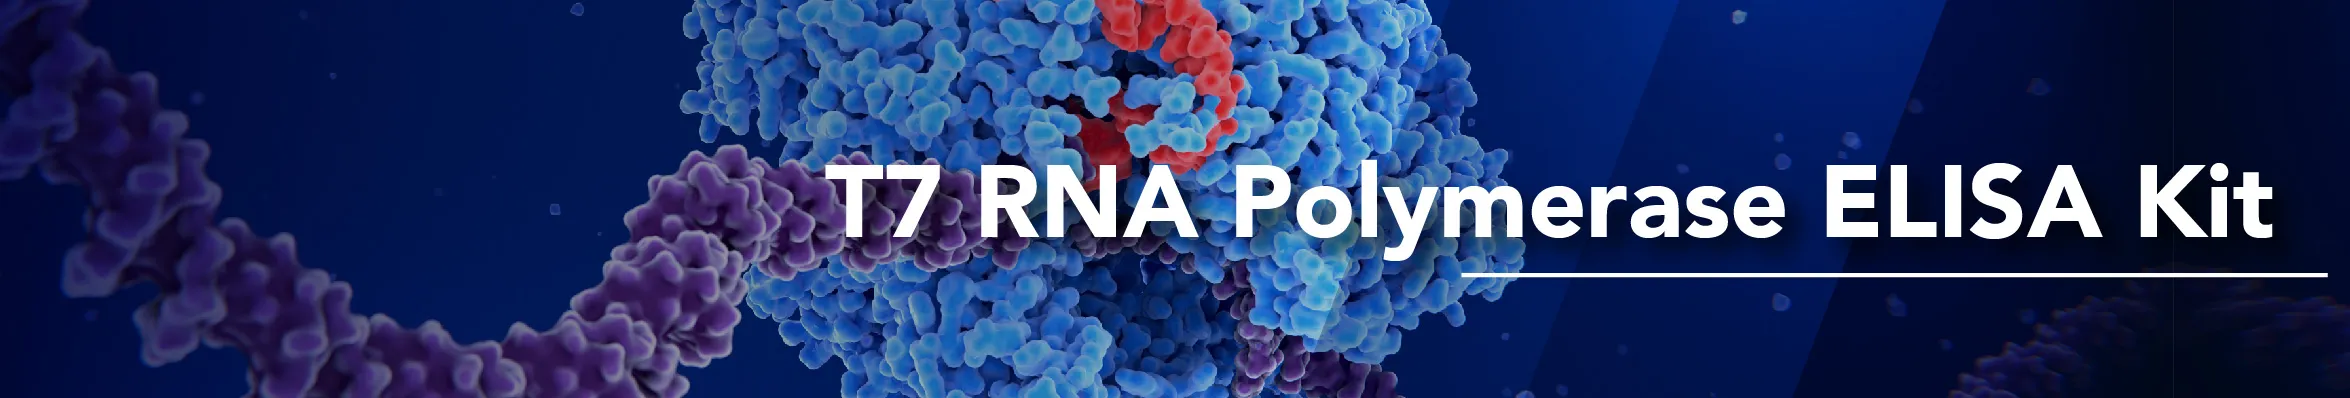 T7 RNA Polymerase ELISA Kit